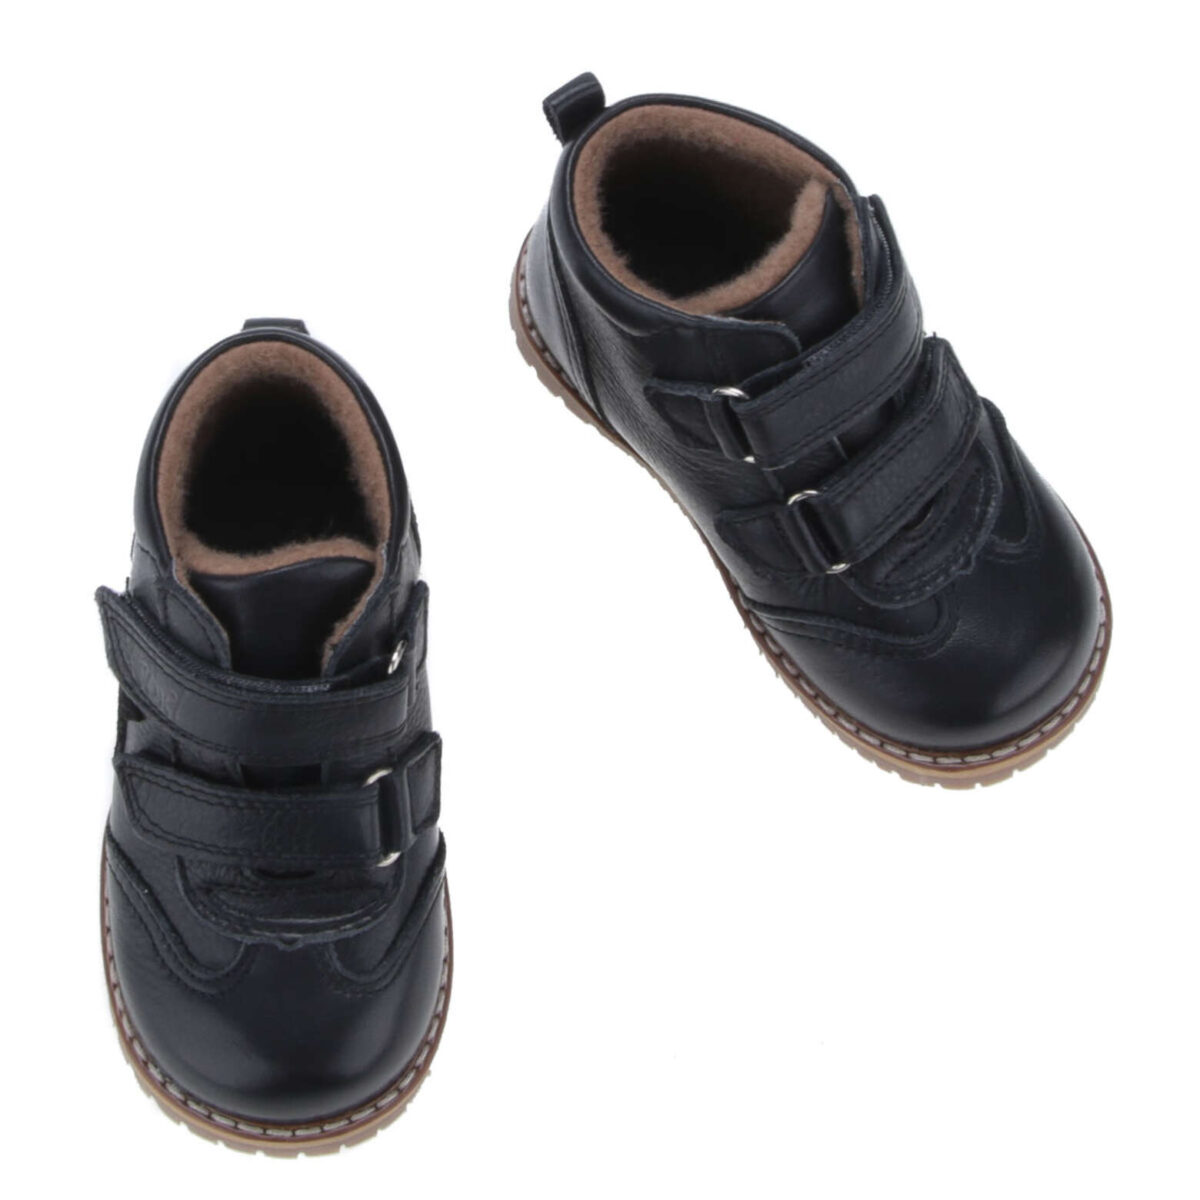 Traperki zapinane na dwa rzepy - te buty są idealne dla dzieci chodzących do przedszkola i żłobka. Buty Emel w całości uszyte są ze skóry naturalnej. Wnętrze buta obszyte jest polarowym kocem (ocieplina), który zapewnia termoizolację i sprawia że bucik może być noszony w temperaturach od -5 do +15 stopni. Ocieplina została wzbogacona o membranę WATERPROOF, która jest wodoszczelna, wiatroszczelna oraz charakteryzuje się wysoką oddychalnością. Te buciki są odporne na wpływ czynników zewnętrznych oraz zapewniają doskonałe warunki wewnątrz - nie ma potrzeby ubierania do nich grubych skarpetek. Stopy w nich nie zmarzną i nie przemokną.